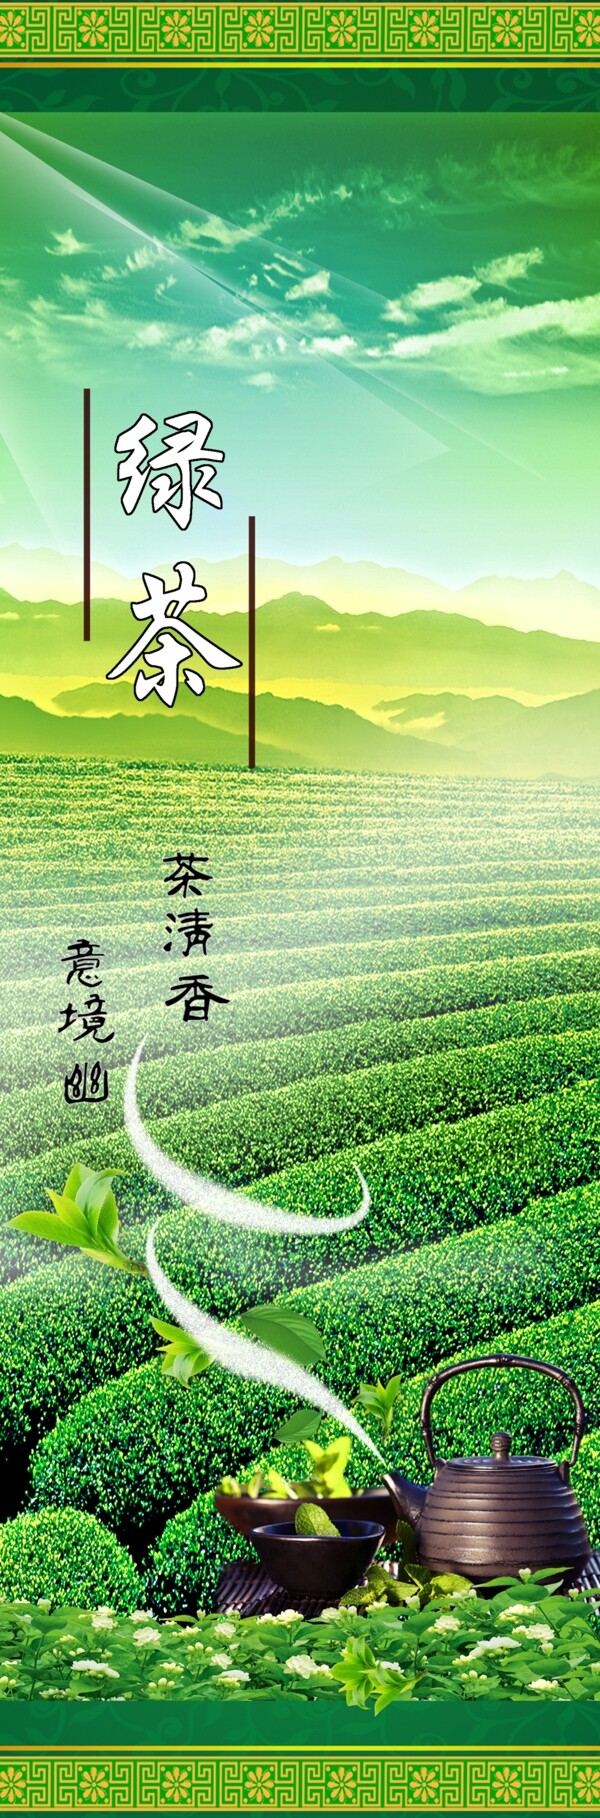 绿茶广告设计